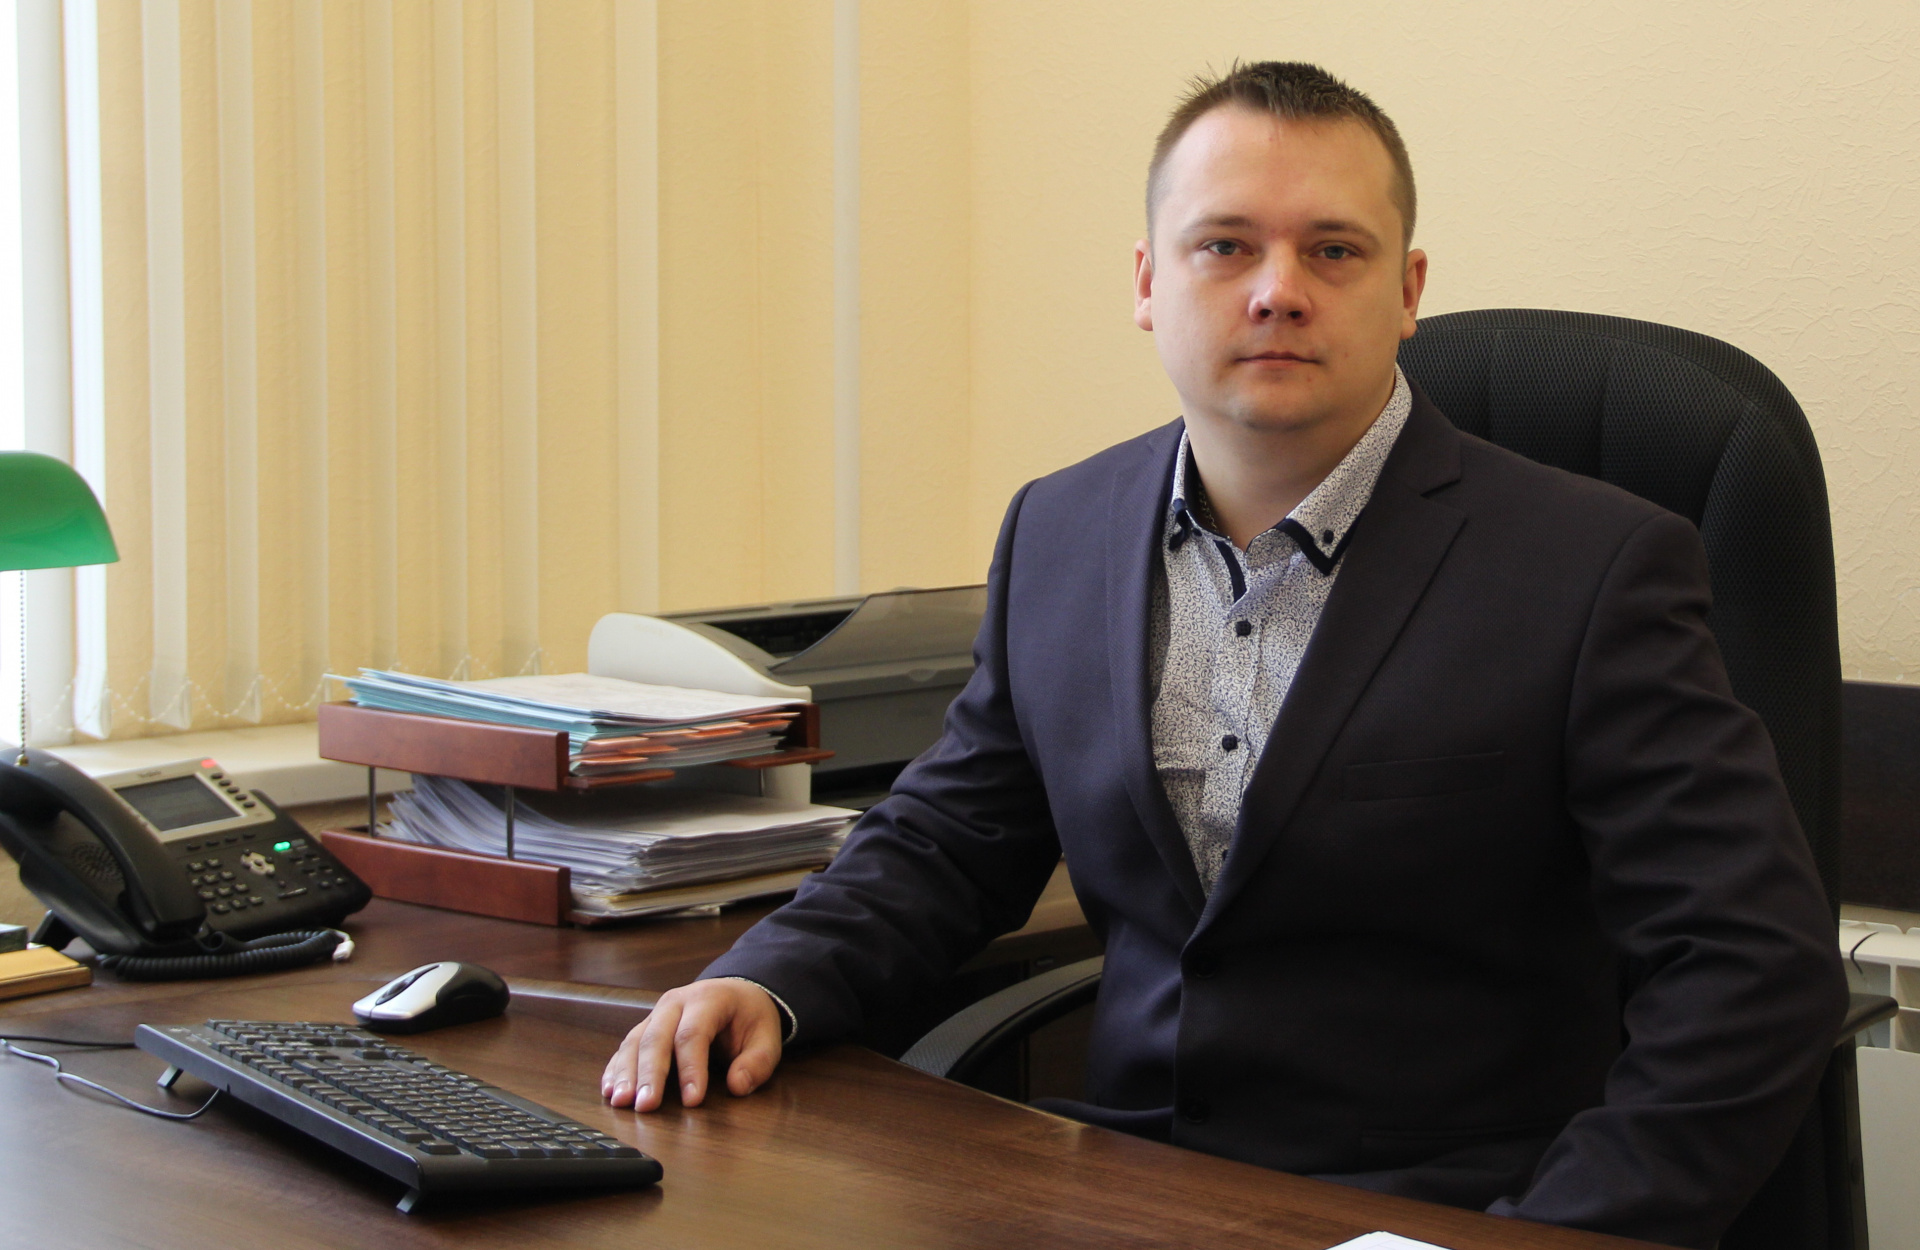  Назначен новый руководитель департамента строительства и архитектуры Ивановской области